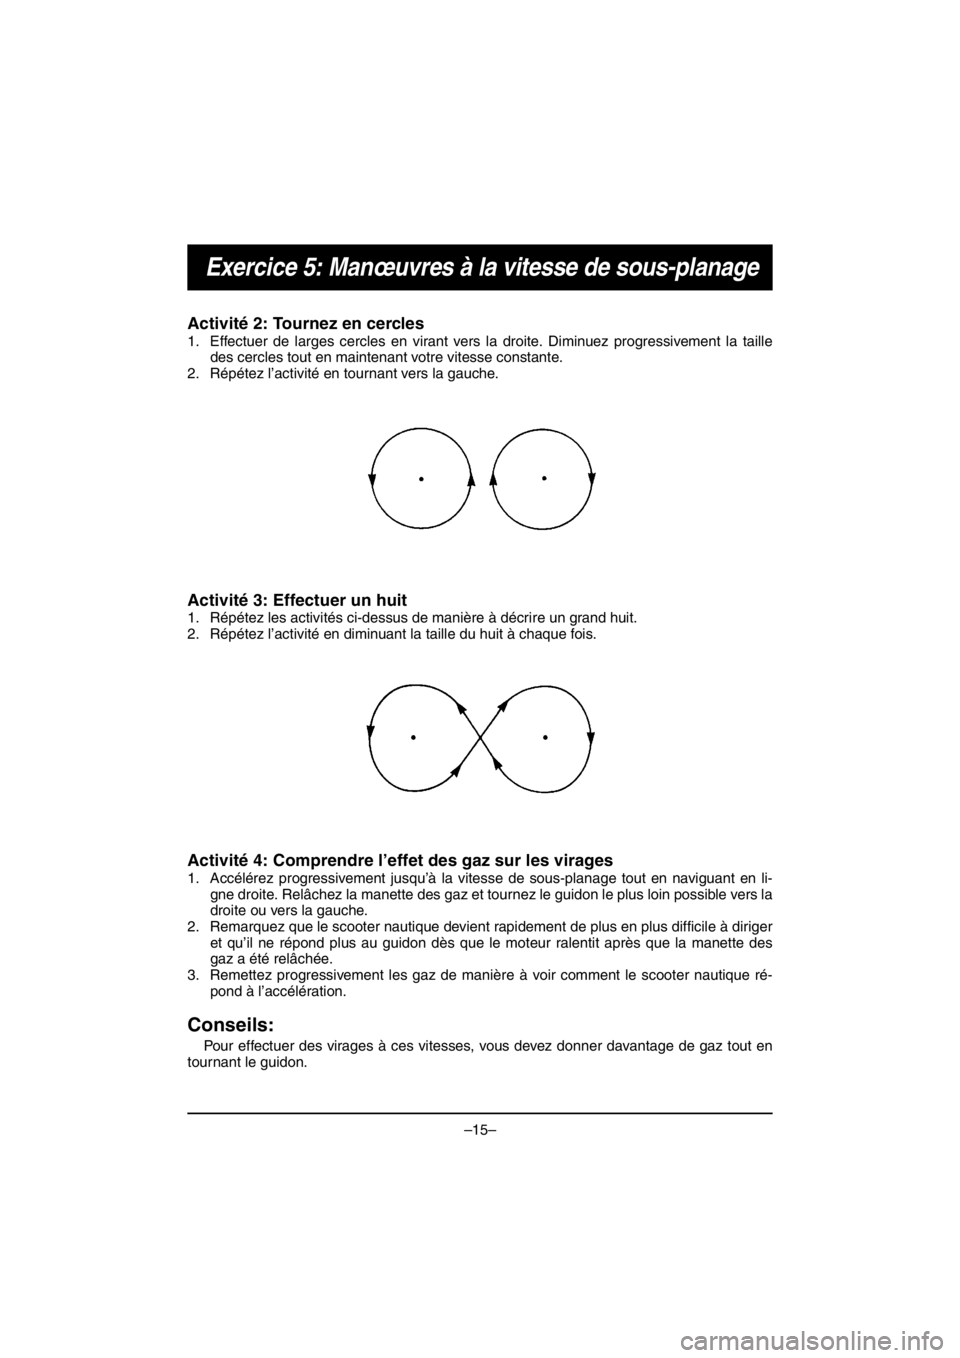 YAMAHA V1 2016  Notices Demploi (in French) –15–
Exercice 5: Manœuvres à la vitesse de sous-planage
Activité 2: Tournez en cercles 
1. Effectuer de larges cercles en virant vers la droite. Diminuez progressivement la taille
des cercles t